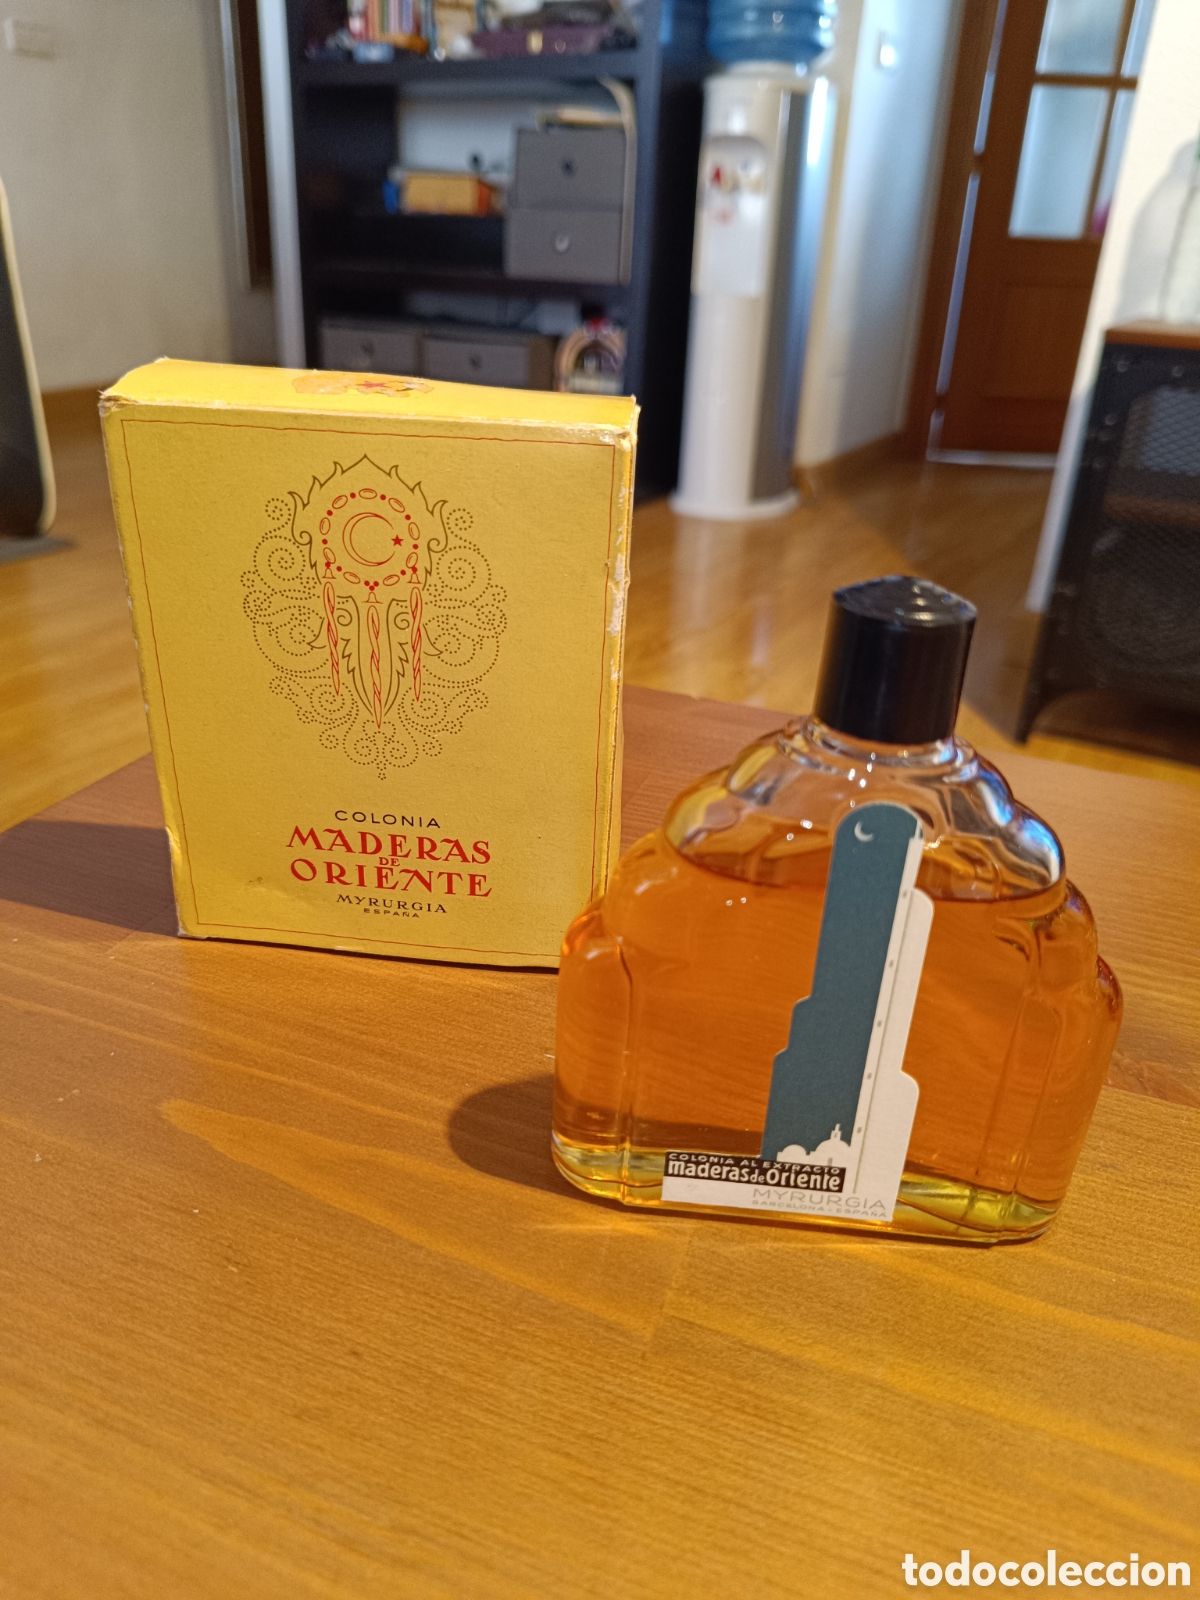 antigua frasco perfume maderas de oriente de my - Compra venta en  todocoleccion